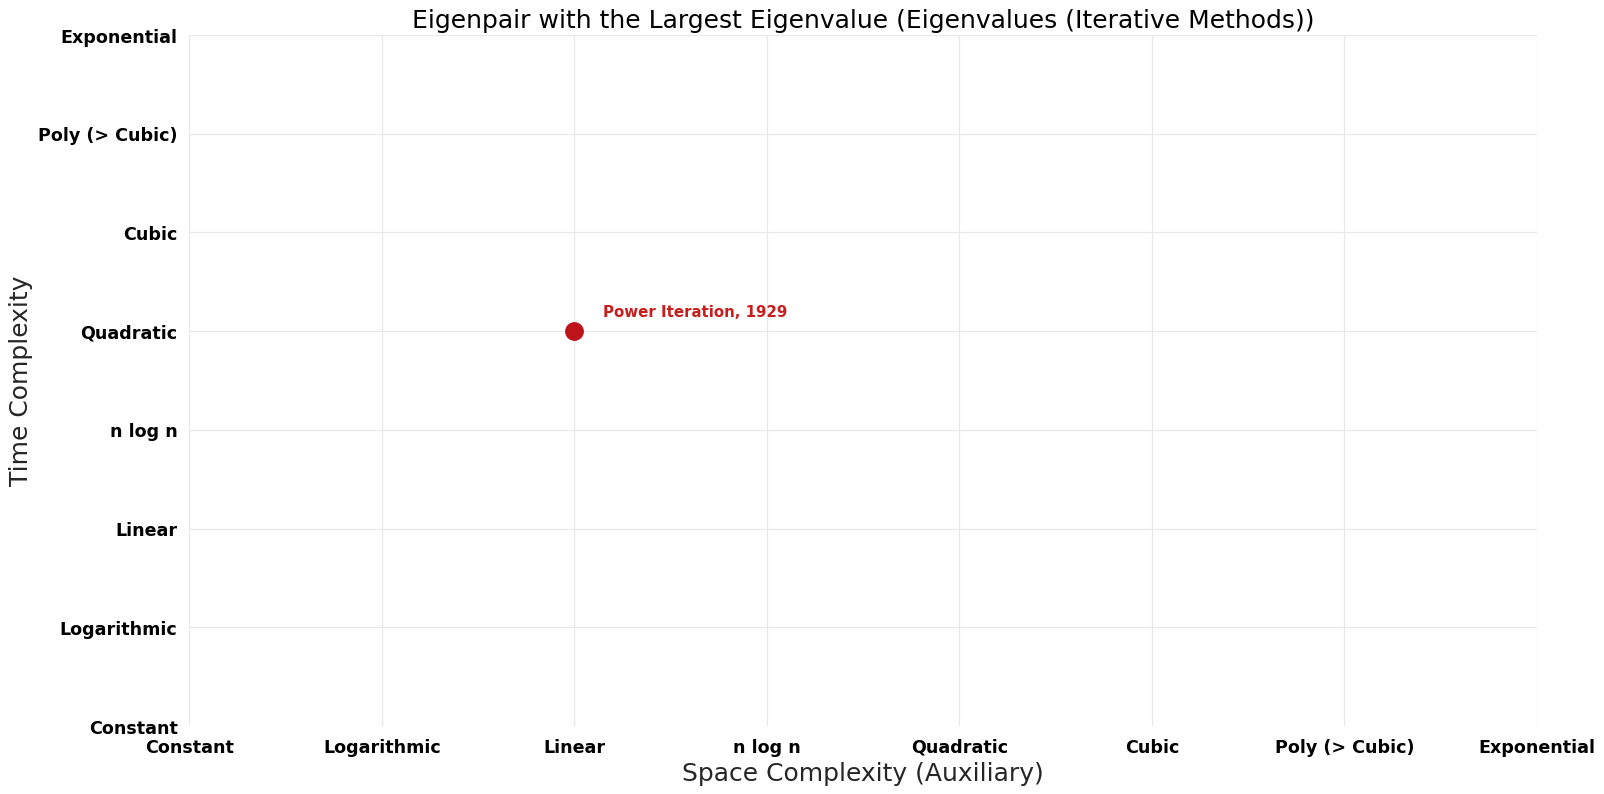 Eigenvalues (Iterative Methods) - Eigenpair with the Largest Eigenvalue - Pareto Frontier.png